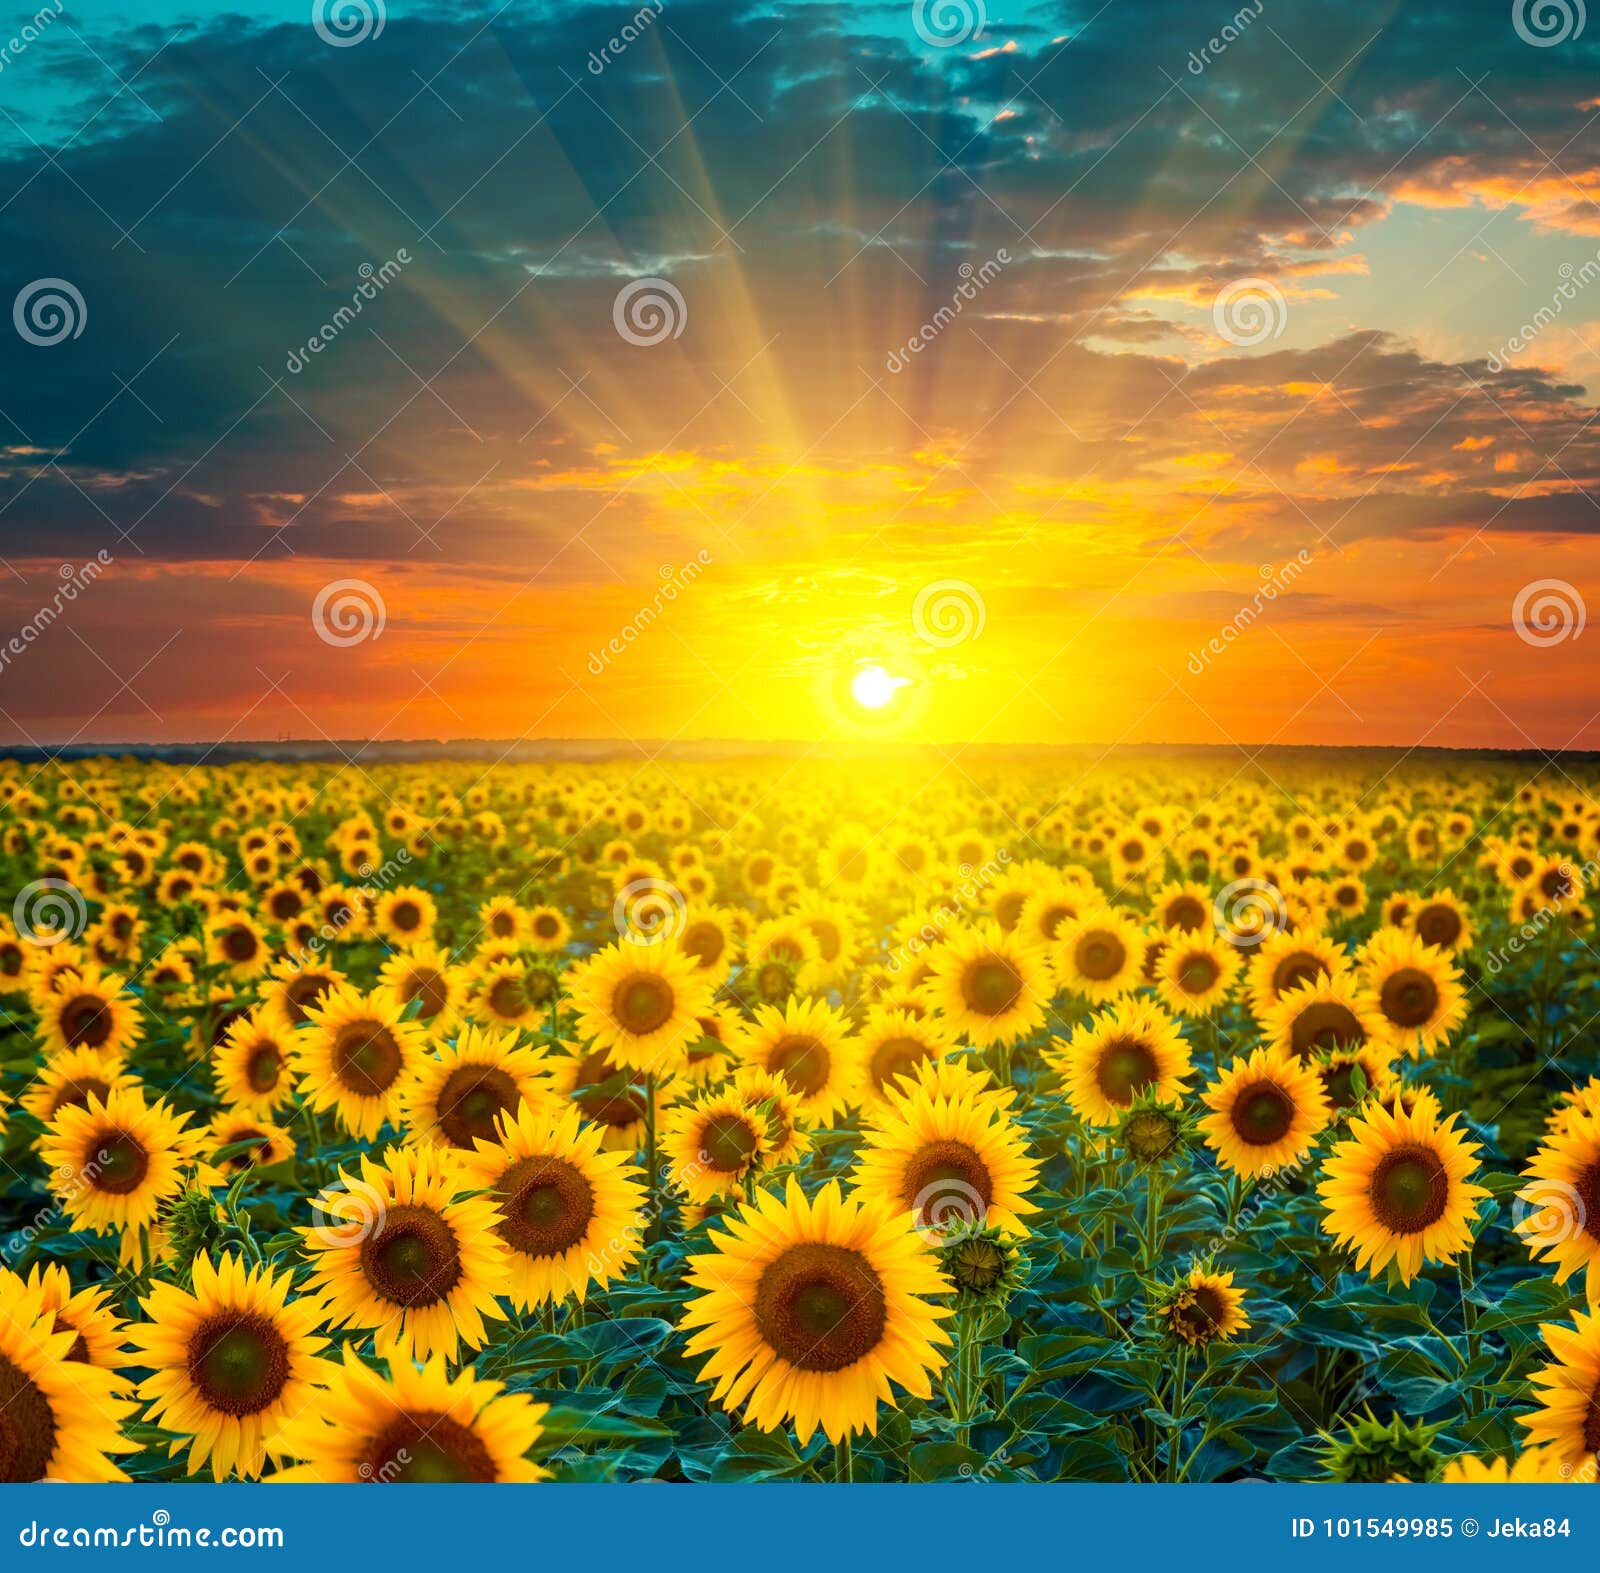 Blechschild XXL Blumenladen Sonnenblumenfeld Sonnenuntergang 